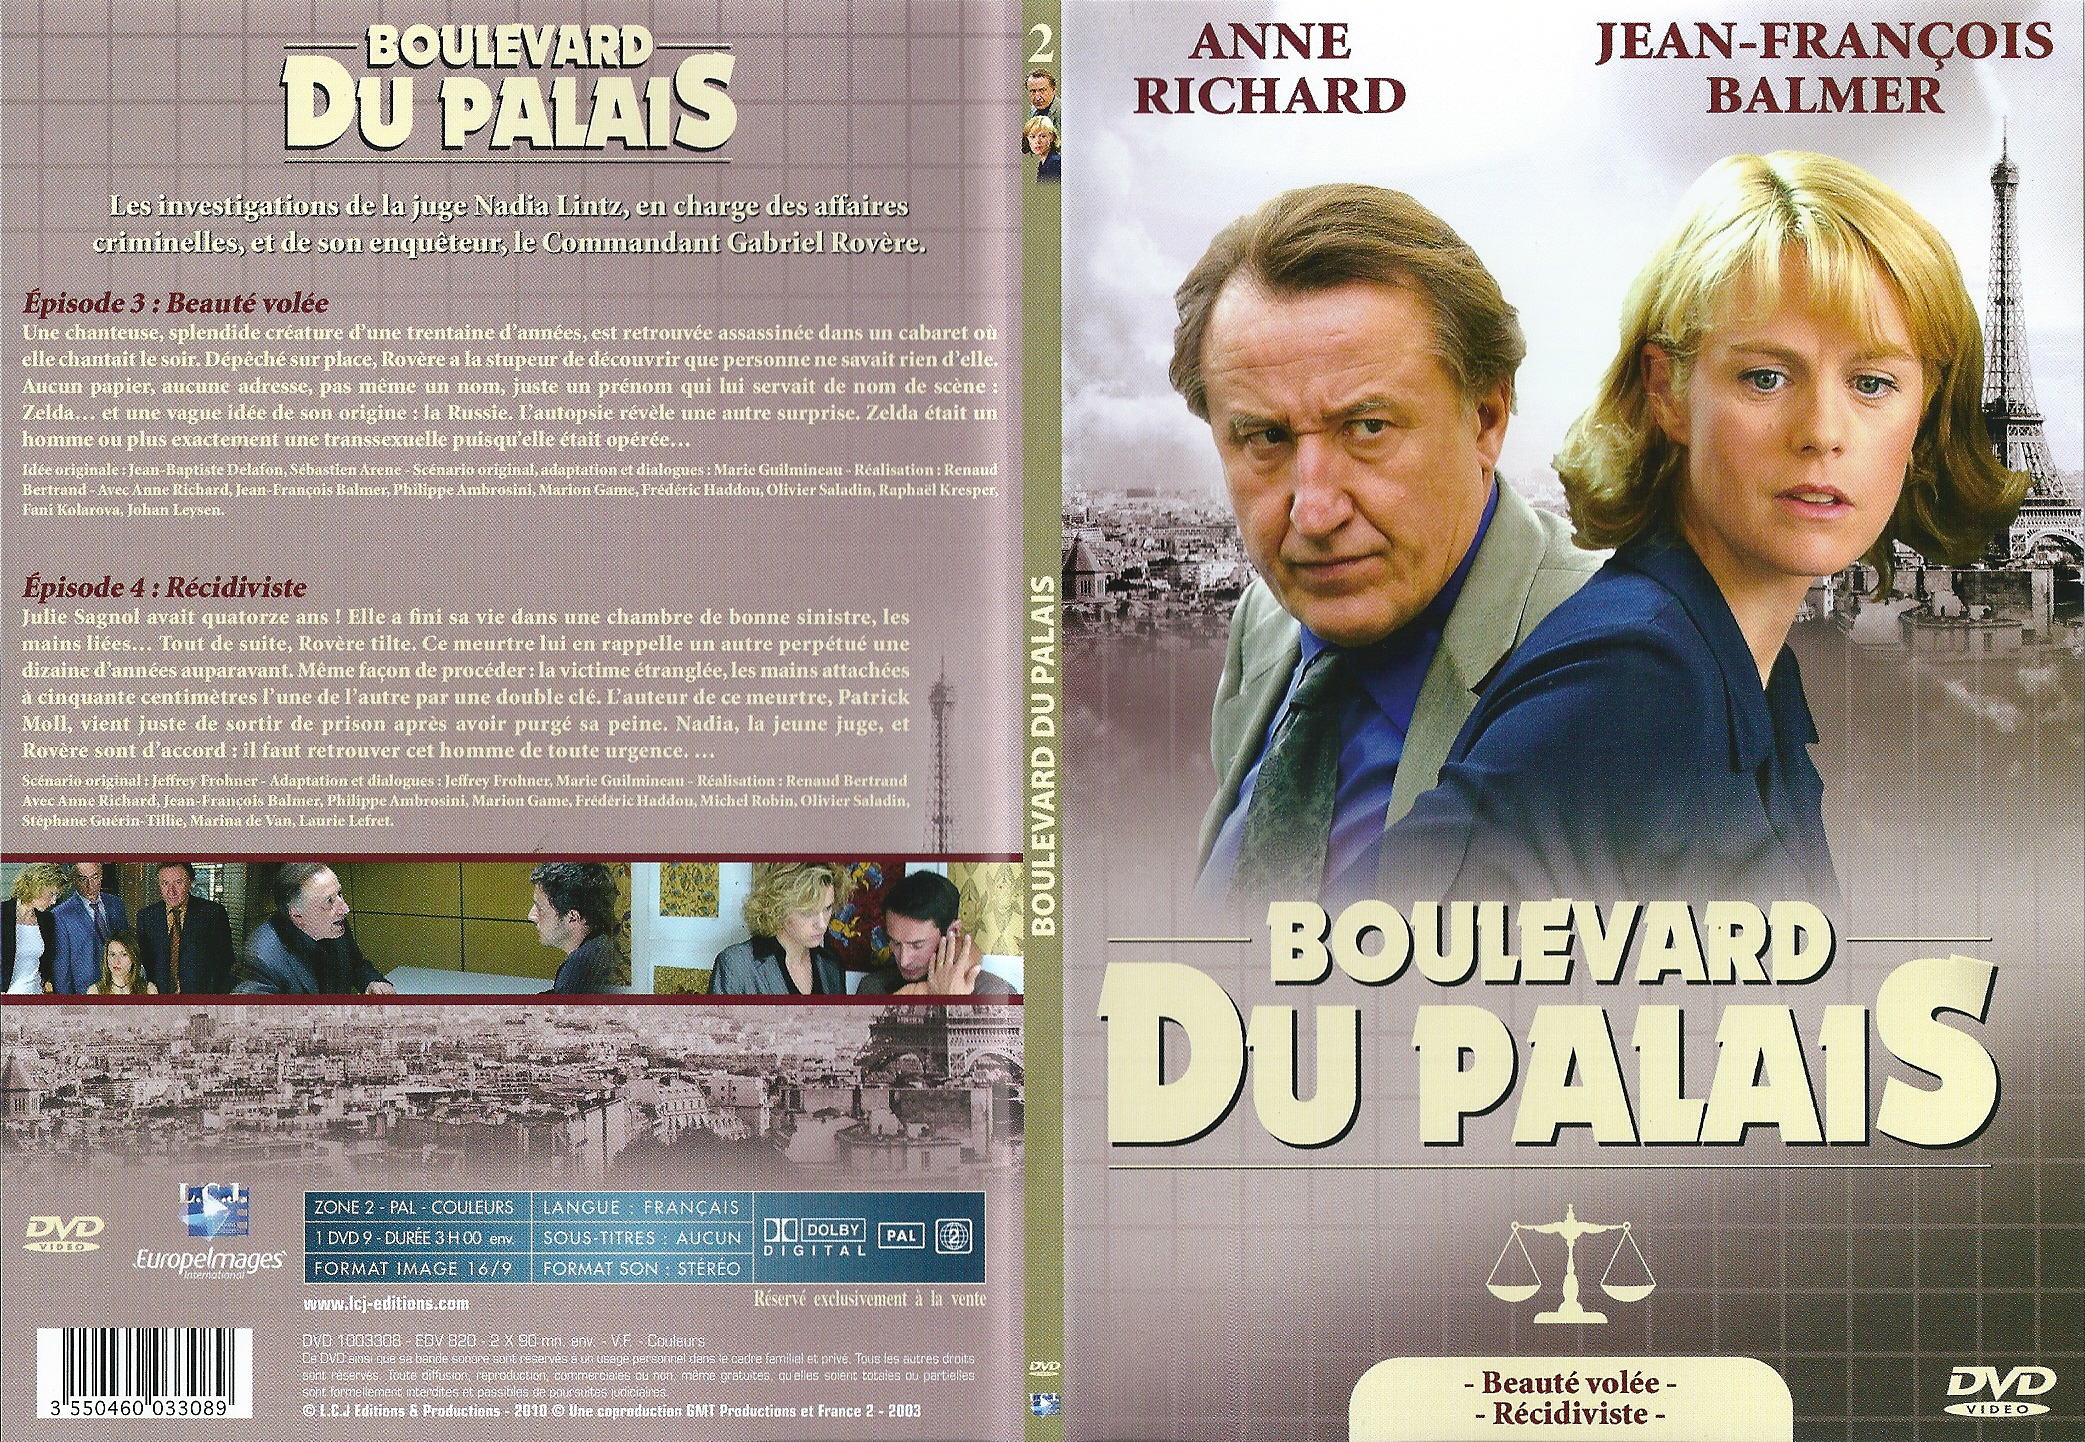 Jaquette DVD Boulevard du Palais Saison 2 DVD 2